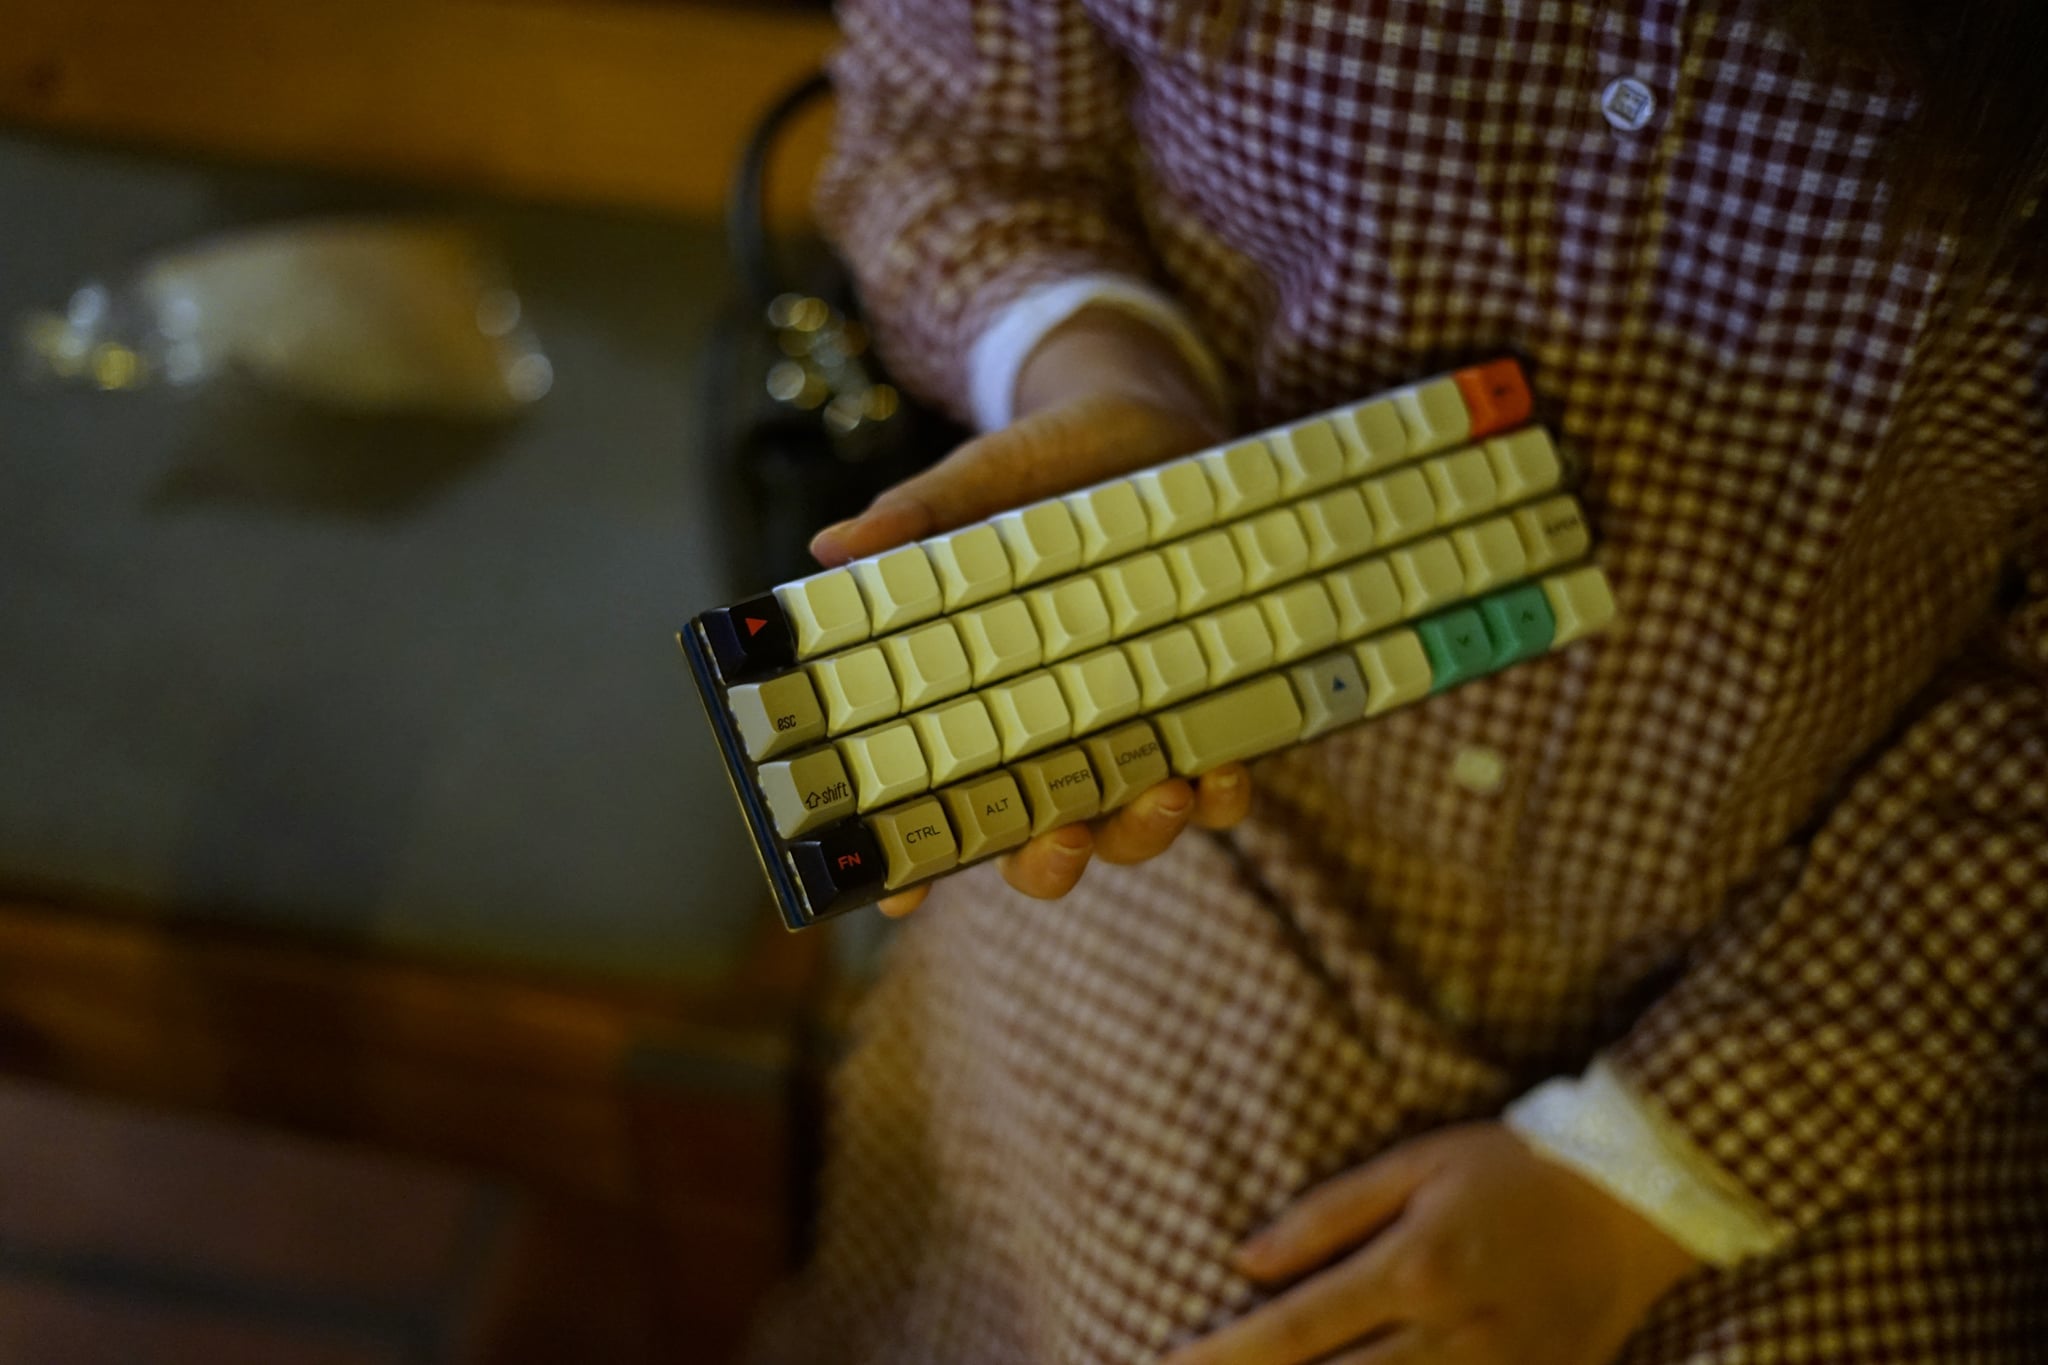 Mint Keyboard